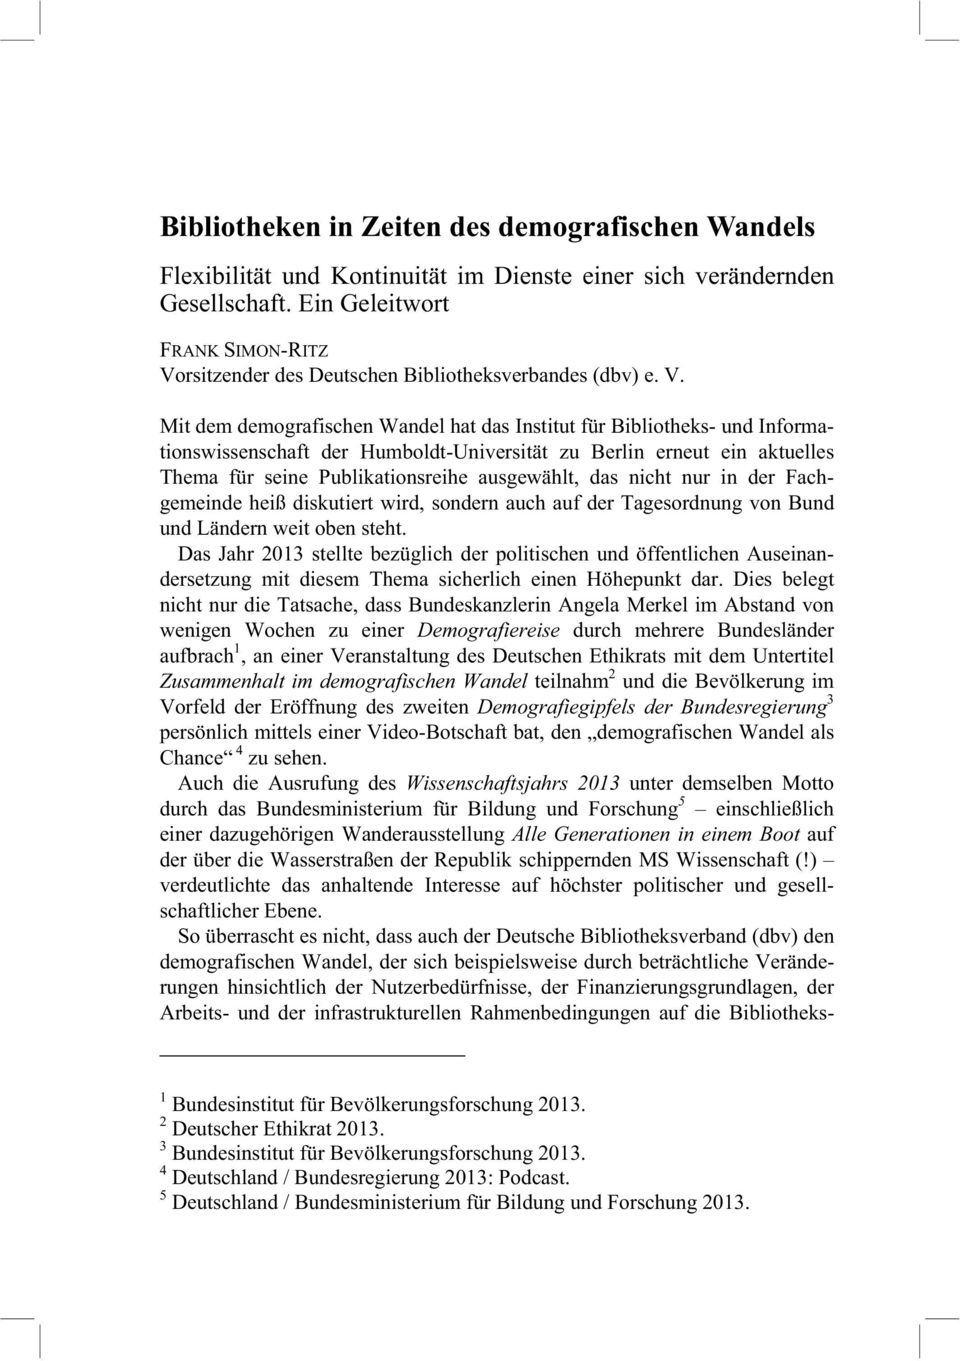 rsitzender des Deutschen Bibliotheksverbandes (dbv) e. V.